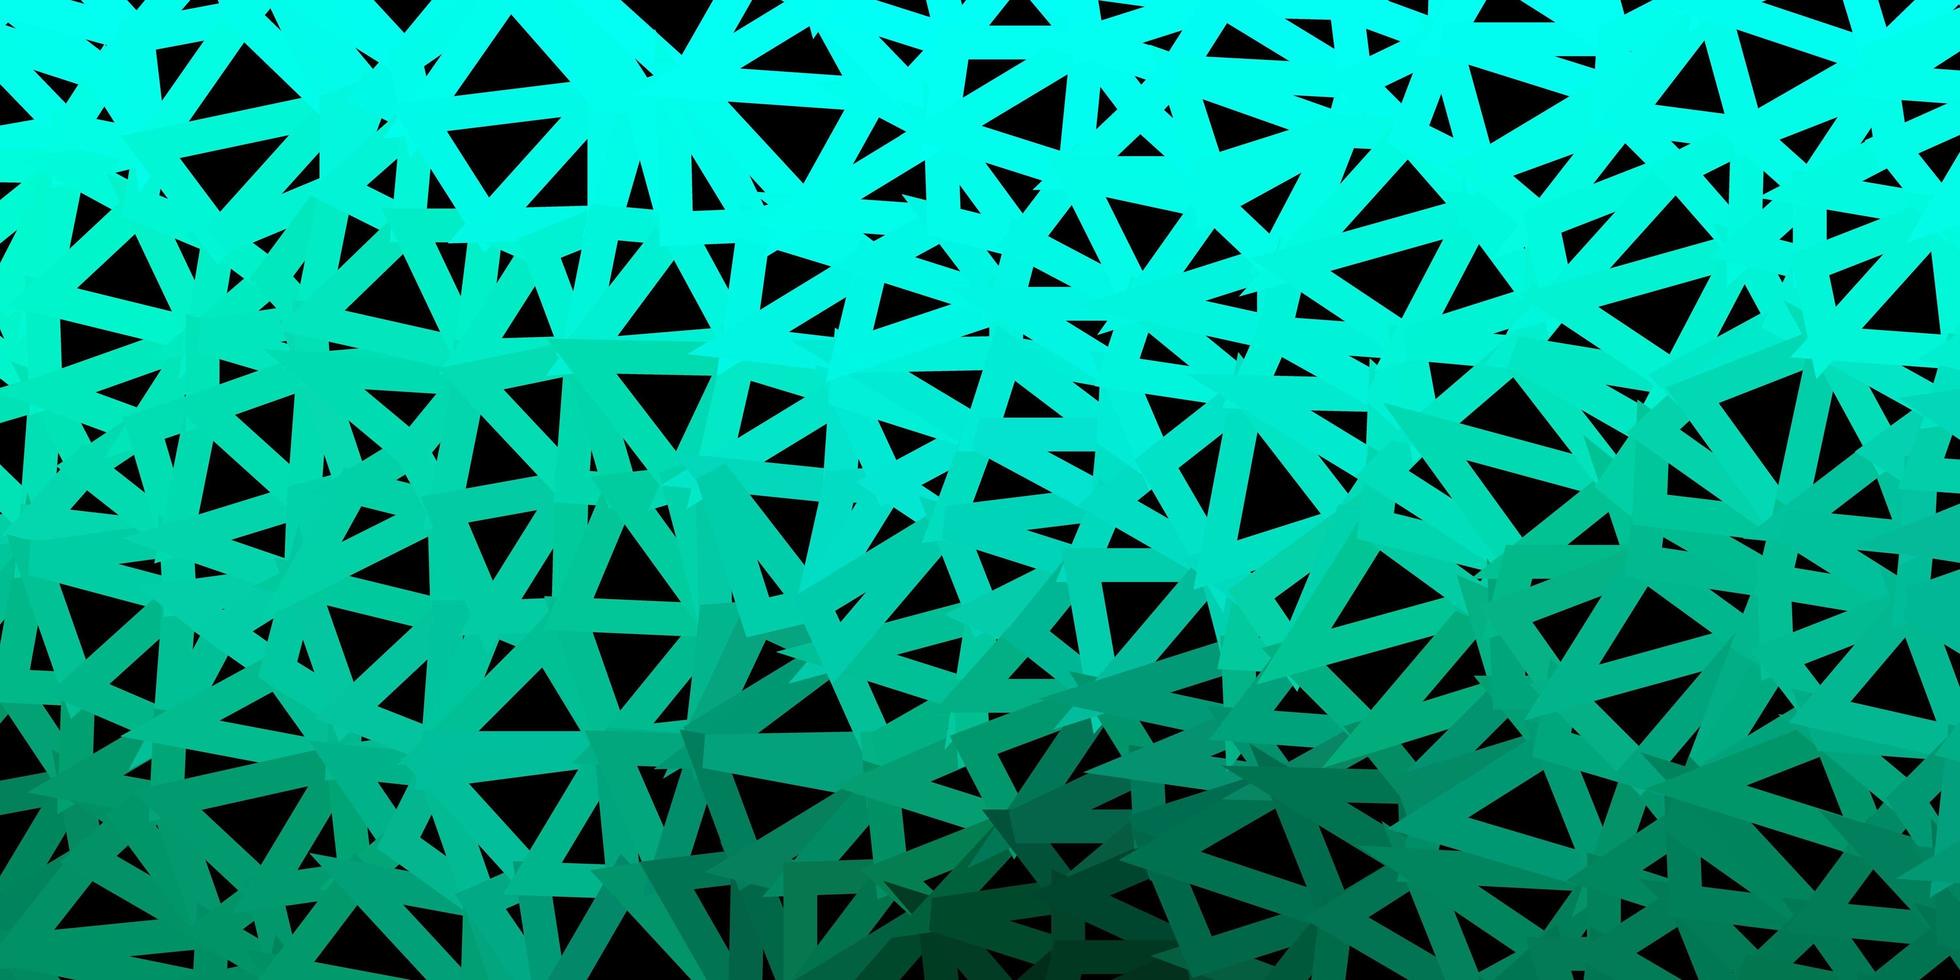 desenho poligonal geométrico do vetor verde escuro.